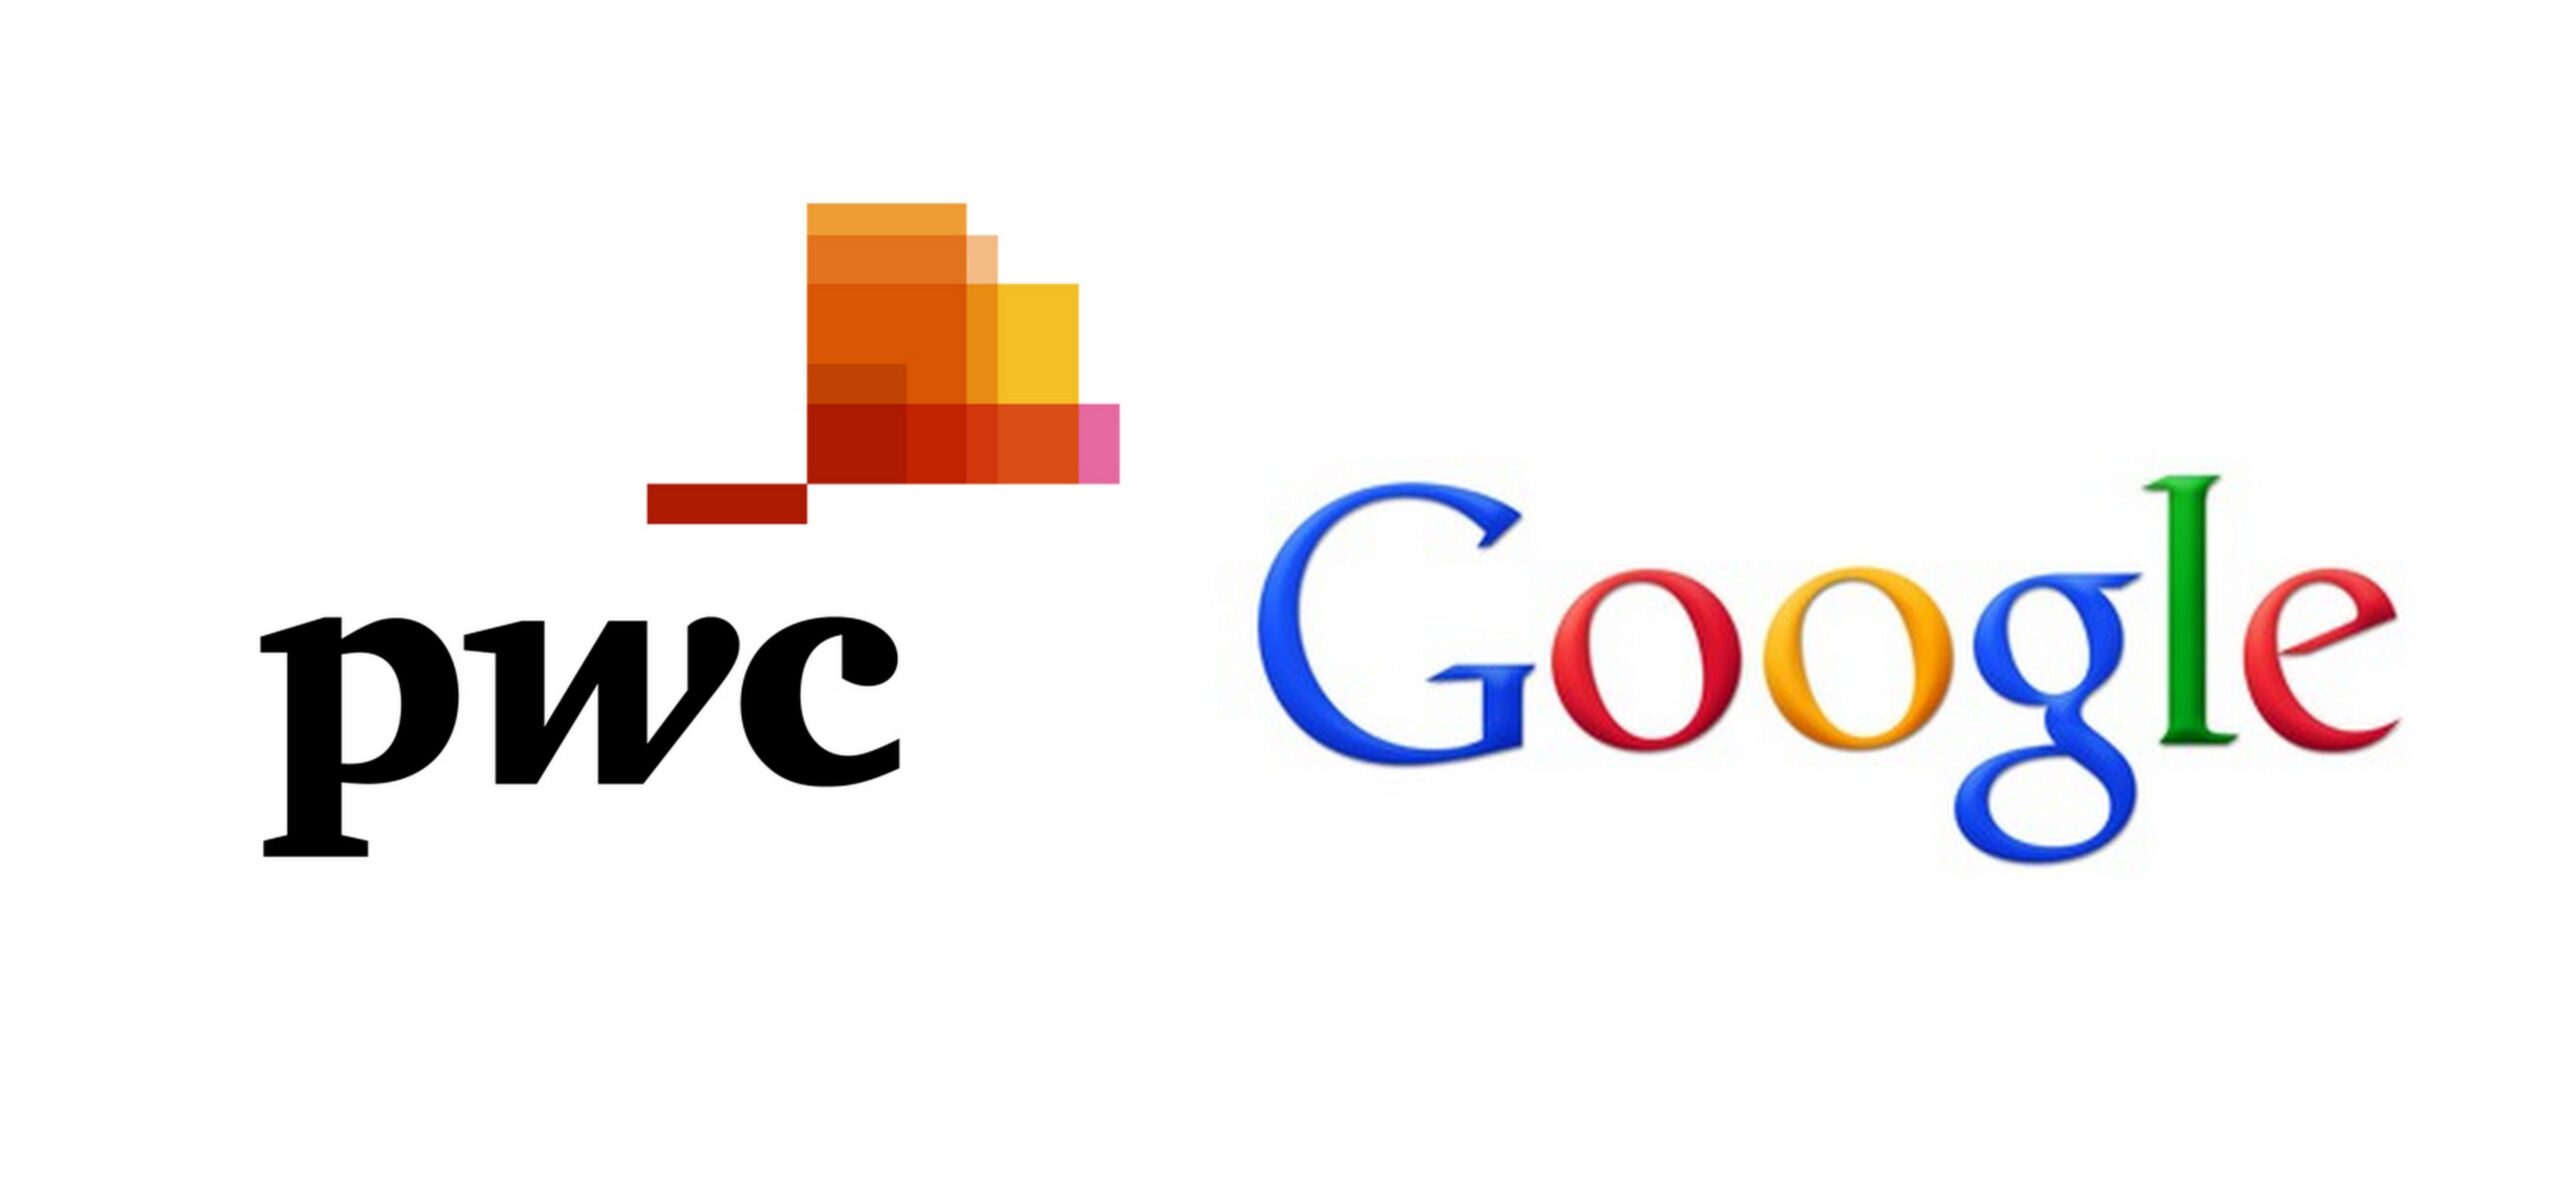 PwC i Google nawiązują współpracę biznesową Przetargi Mediarun Com pwc google scaled